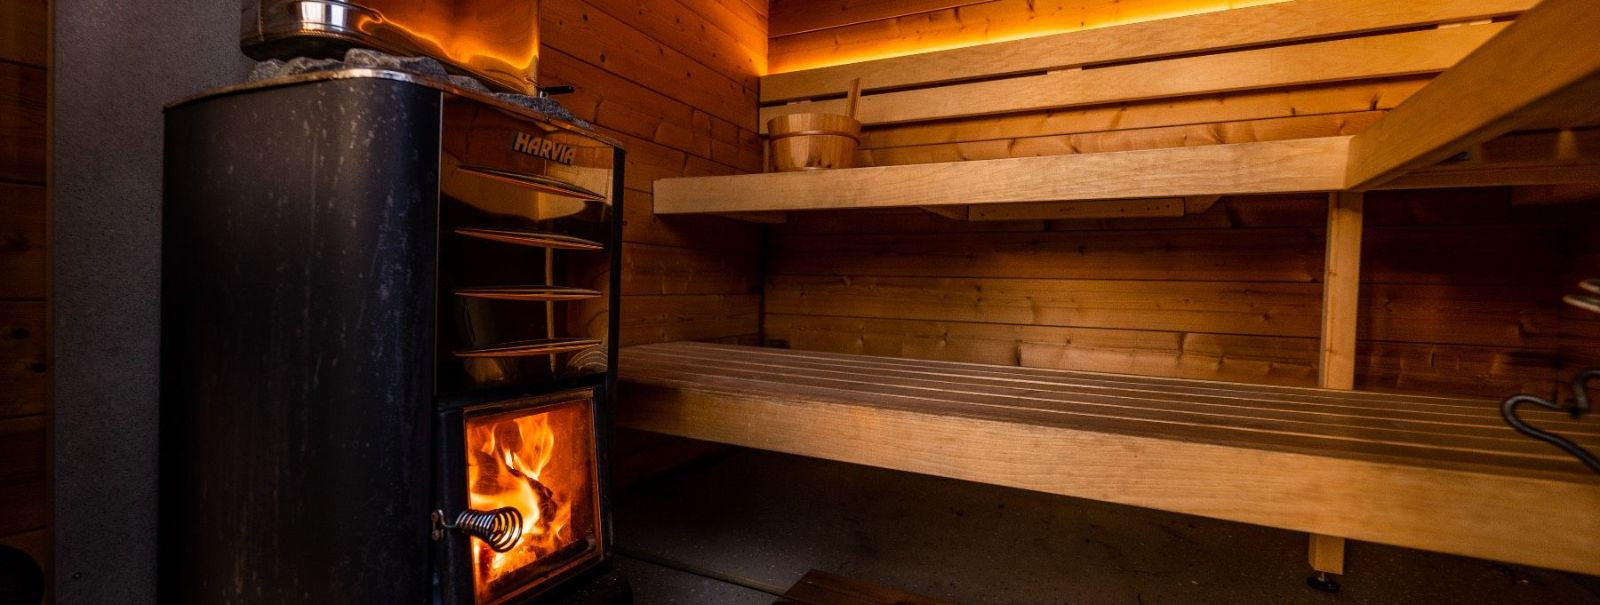 Eesti saun on rohkem kui lihtsalt ruum soojade keriste ja auru ...